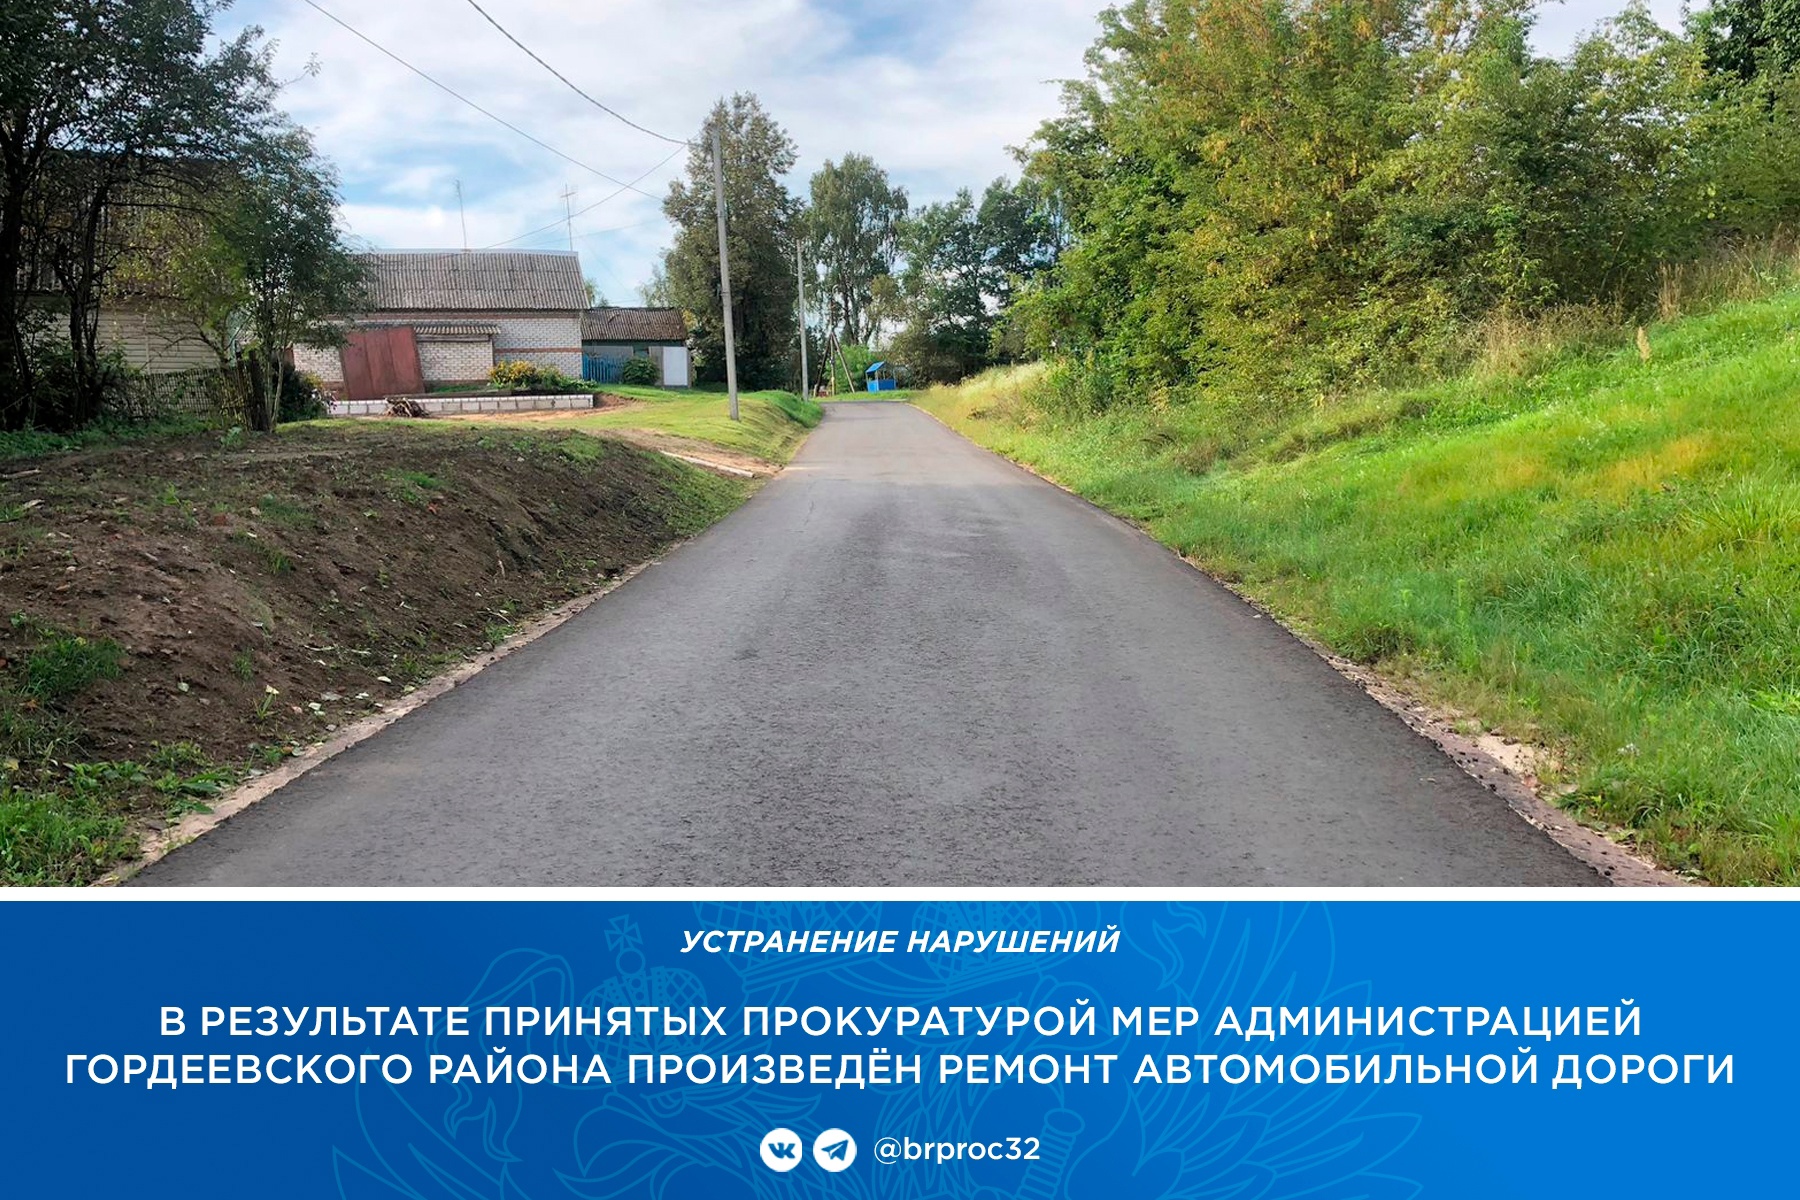 В брянском селе Гордеевка по требованию прокуратуры отремонтировали убитую дорогу